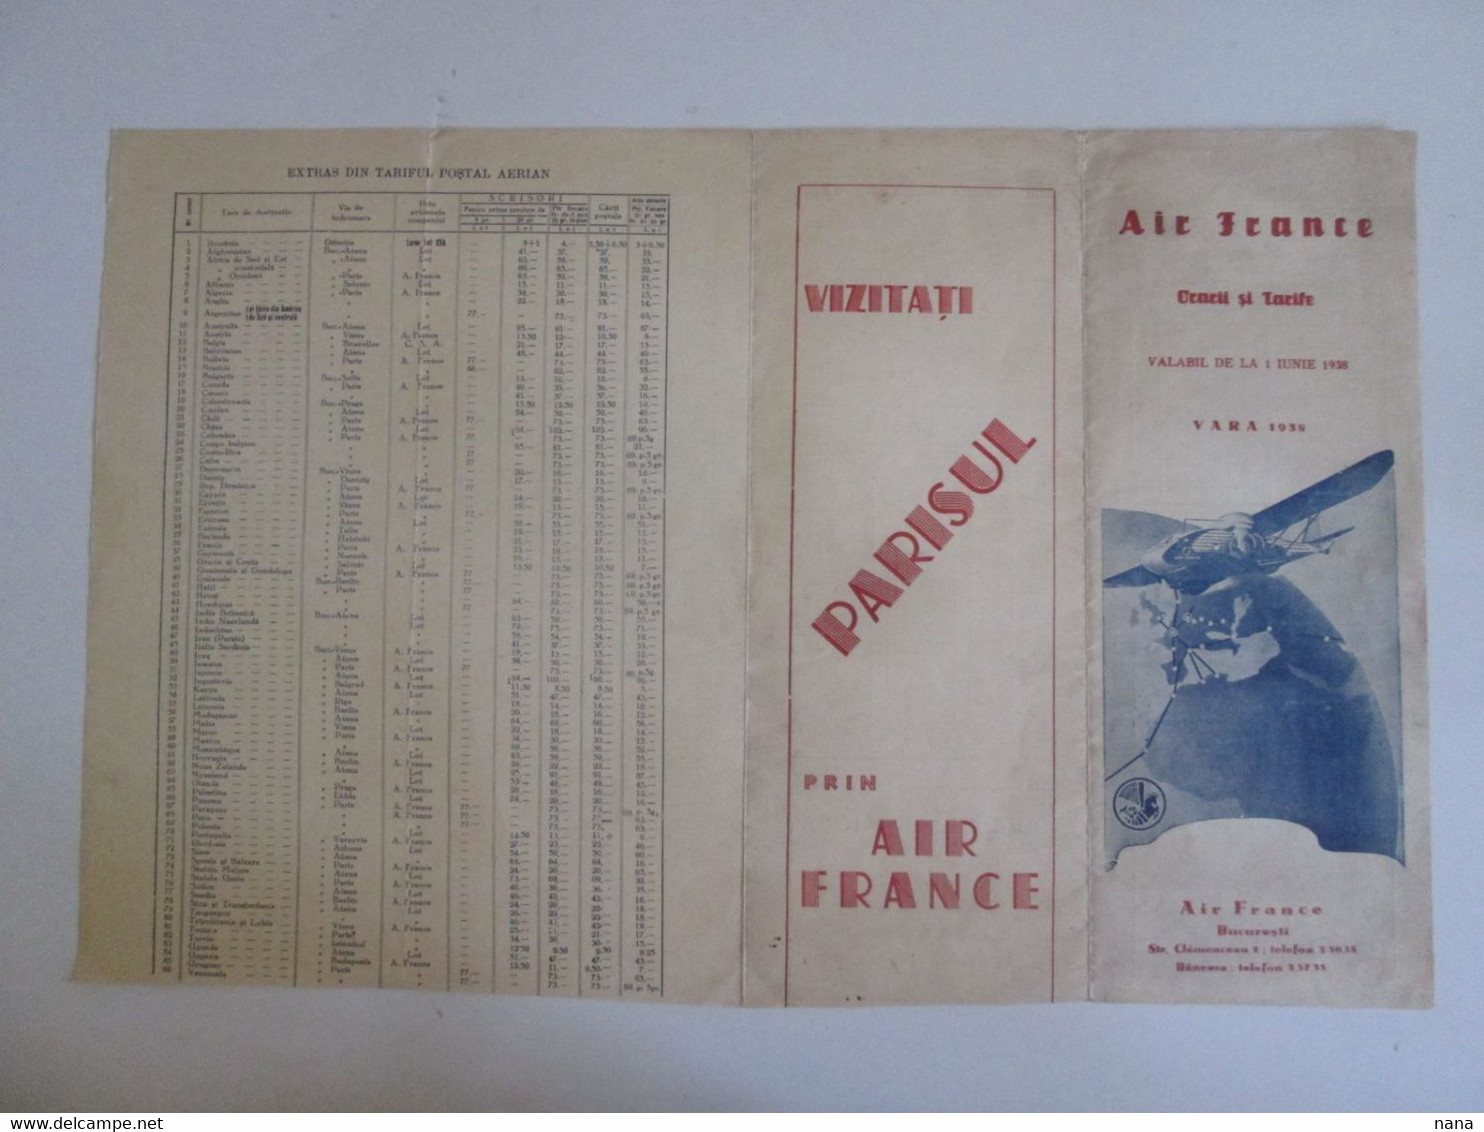 Rare! Air France Horaires Et Tarifs Des Vols Ete 1938 En Roumain/Air France Summer 1938 Timetable & Prices In Romanian - Tijdstabellen